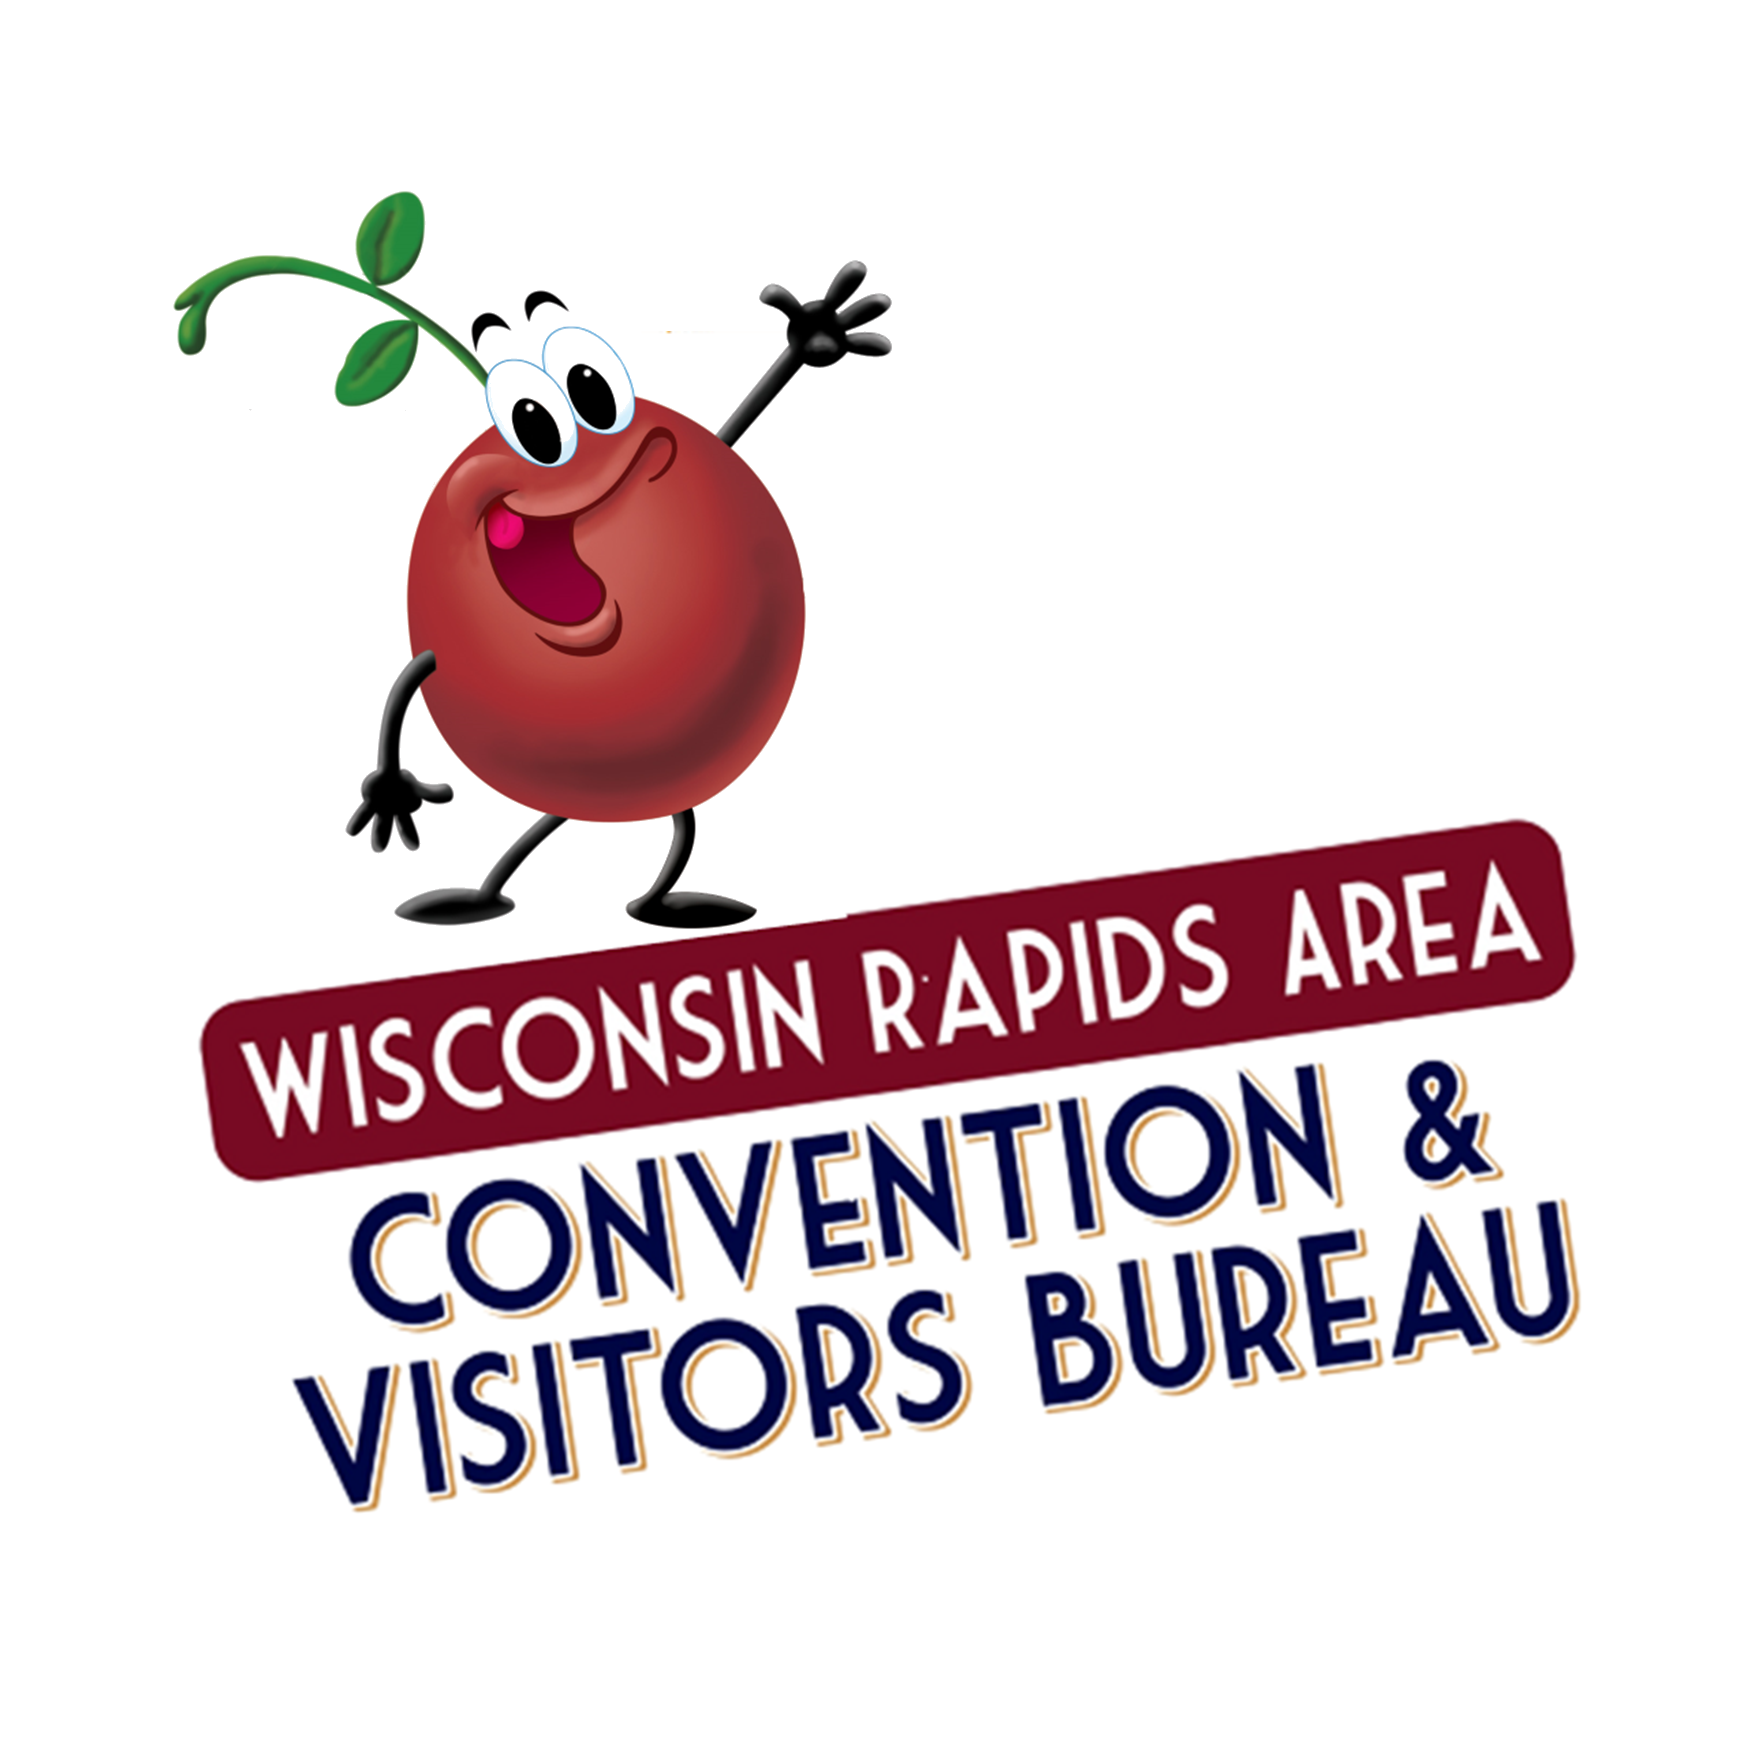 Wisconsin Rapids Area Convention & Visitors Bureau